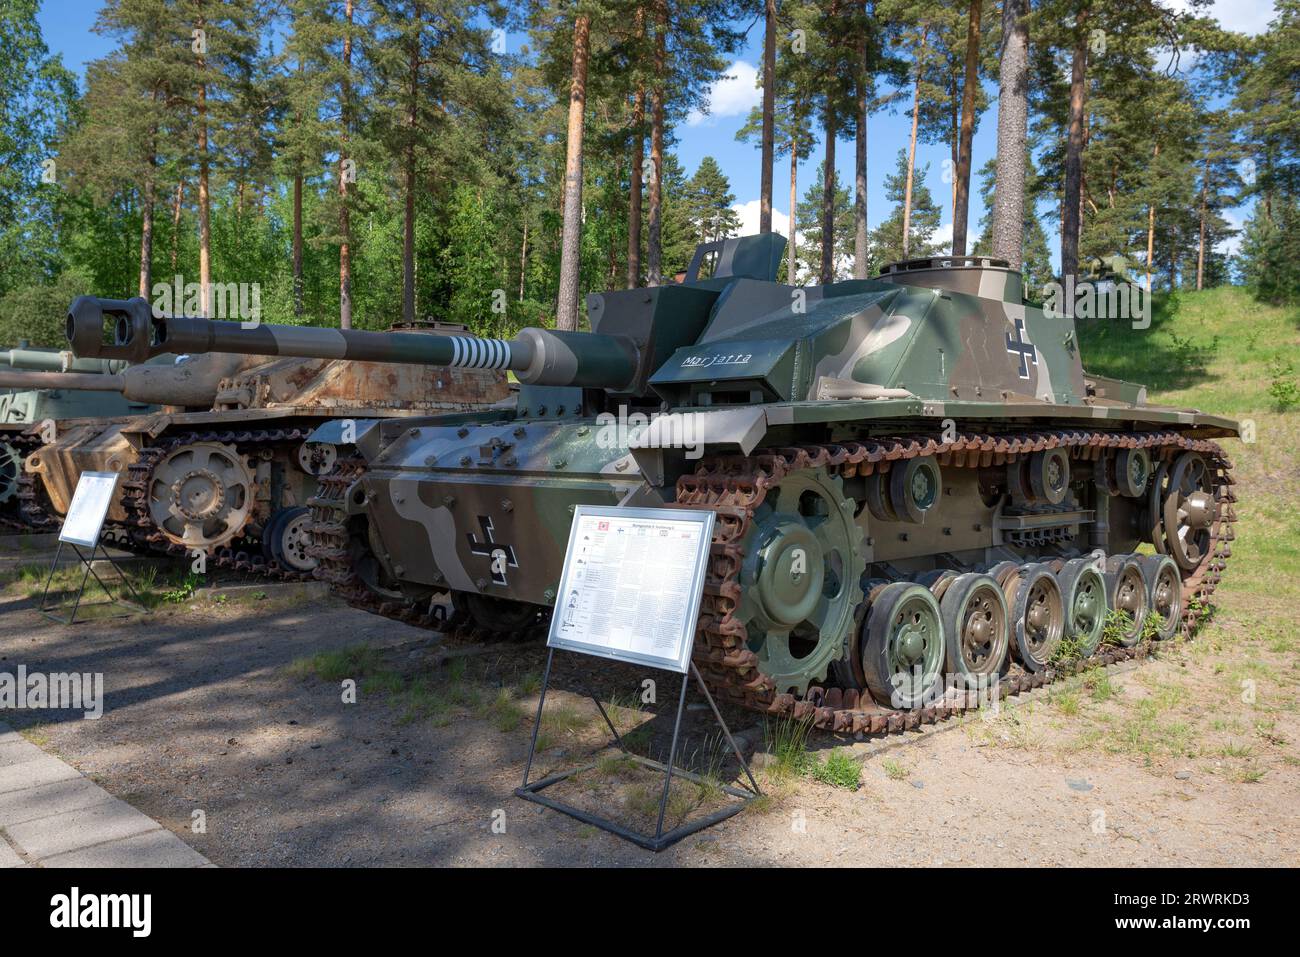 PAROLA, FINNLAND - 10. JUNI 2017: Deutsche Selbstfahrlafette SD.Kfz. 142 (StuG III Ausf.G) Modell 1943. Außenausstellung des gepanzerten Fahrzeugs Stockfoto